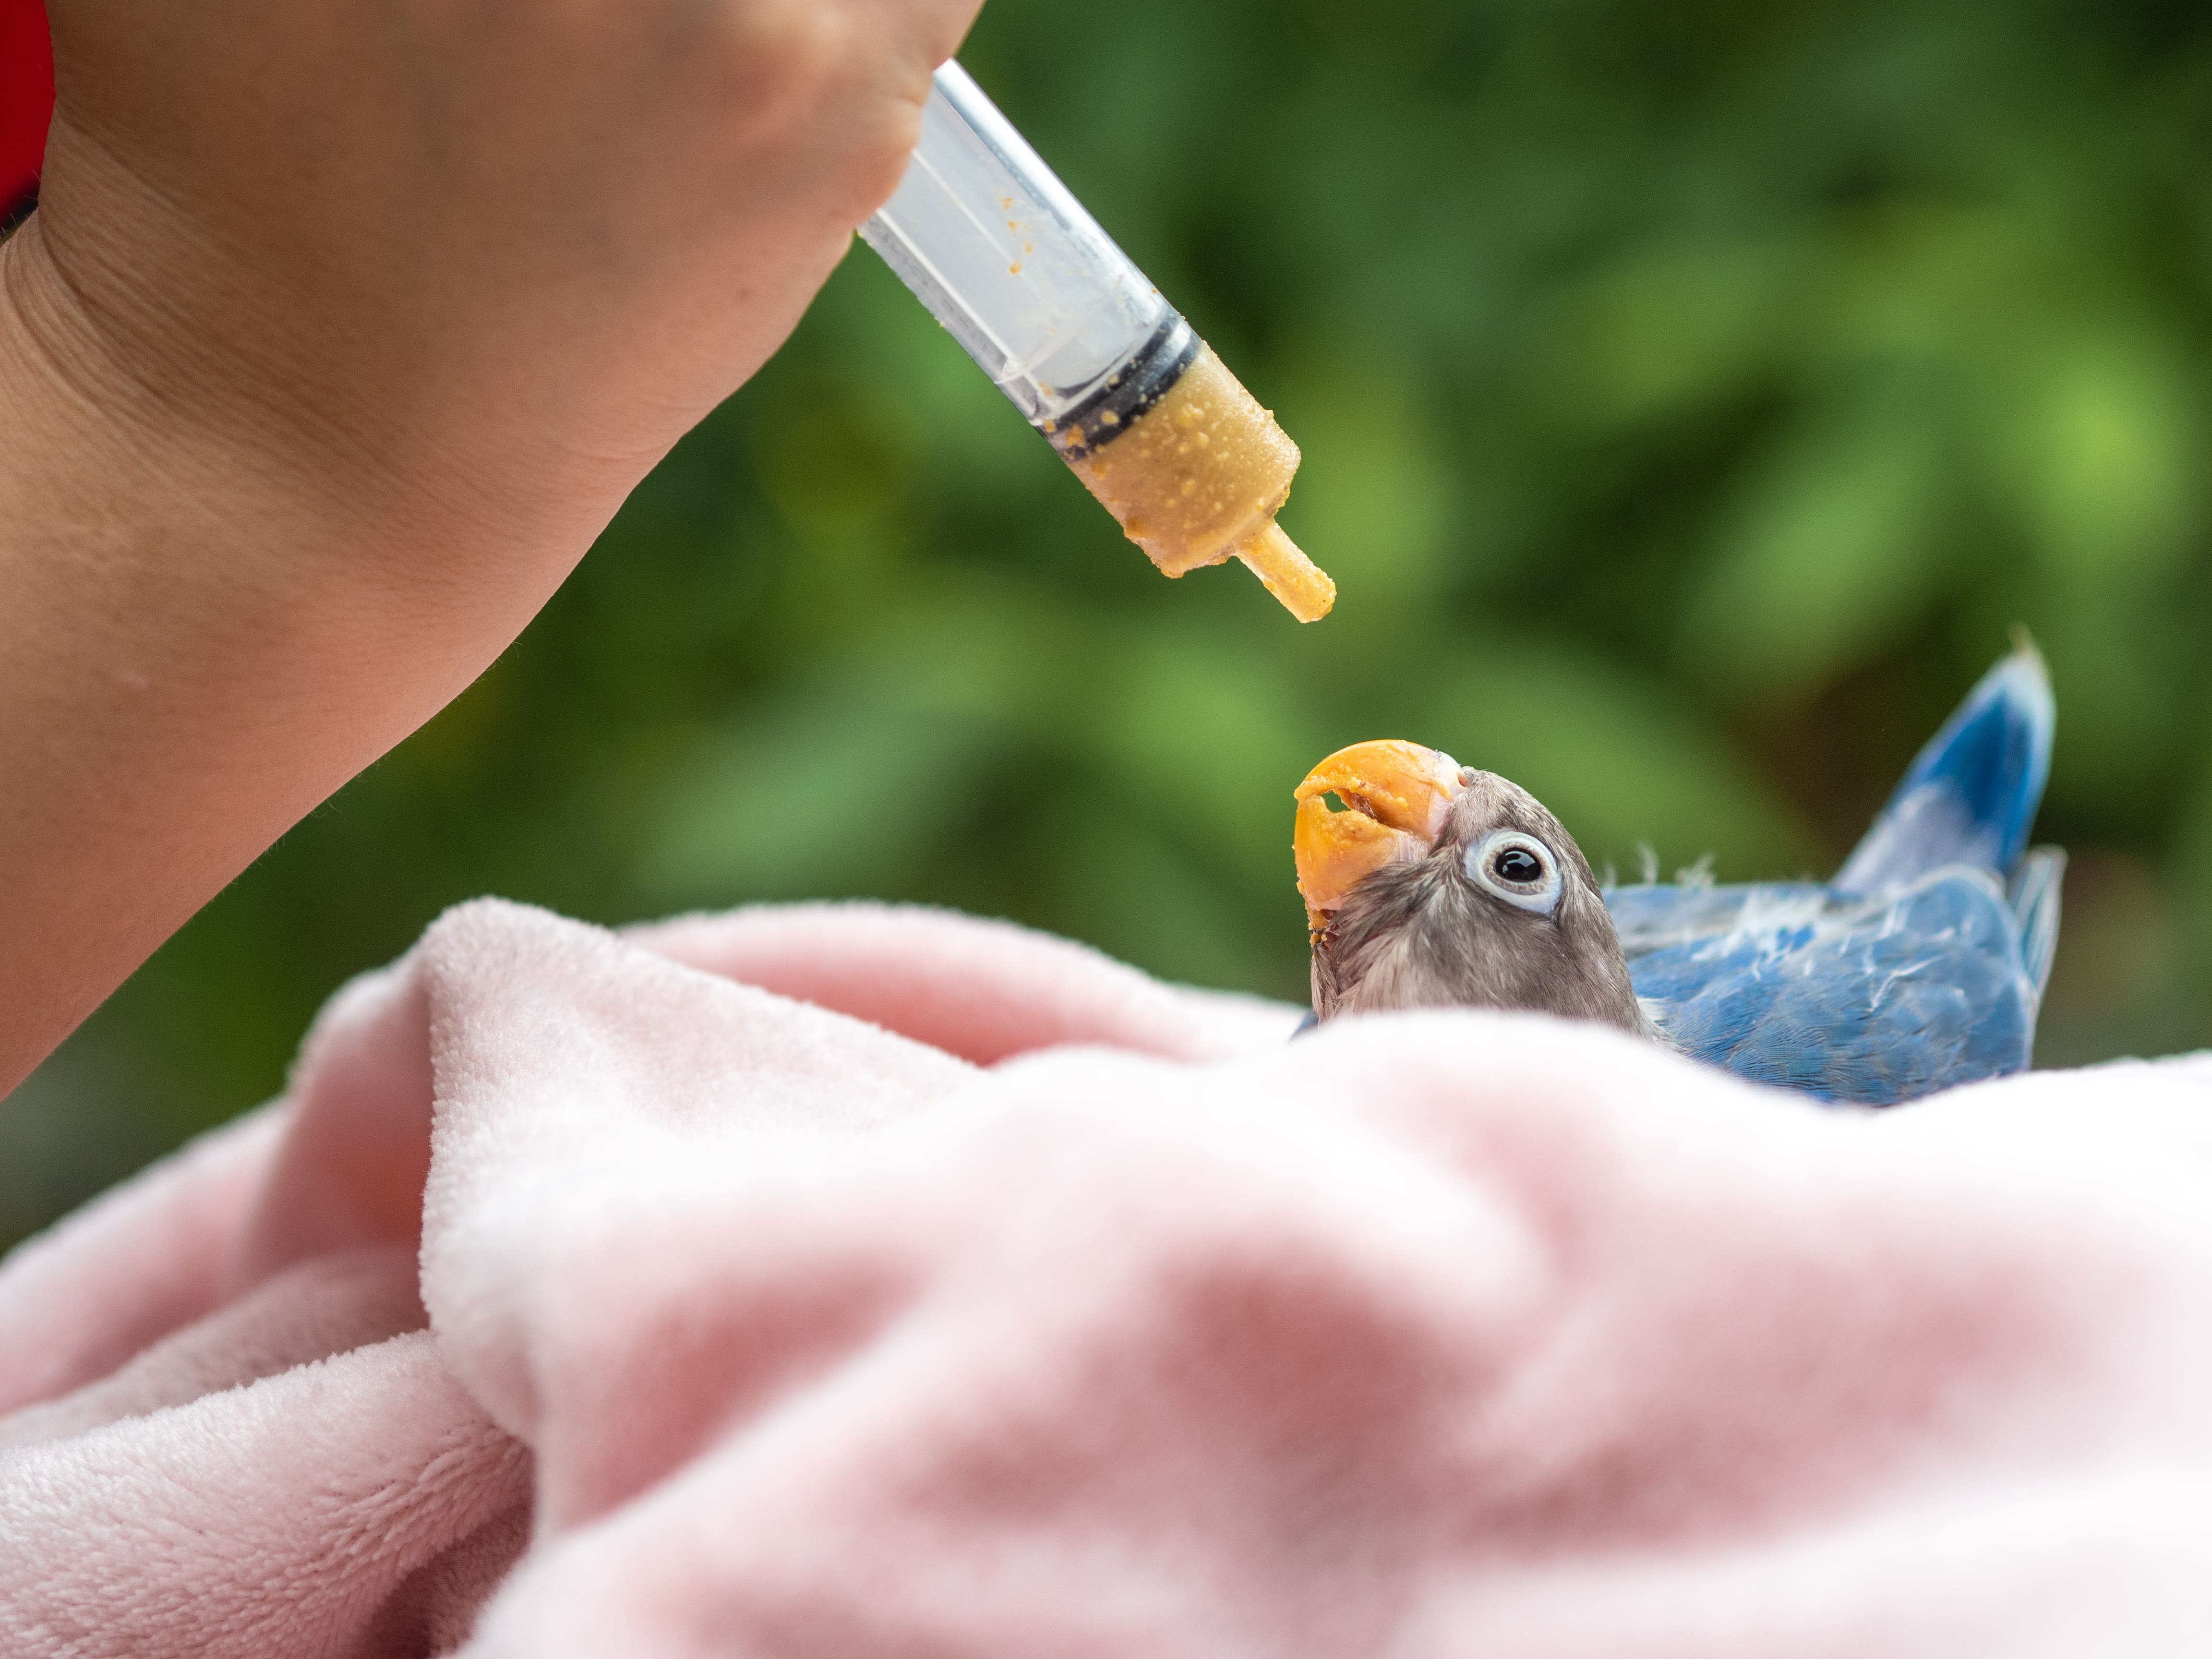 فيتامينات الطيور، طائر صغير يتم اطعامه فيتامينات من خلال الغذاء